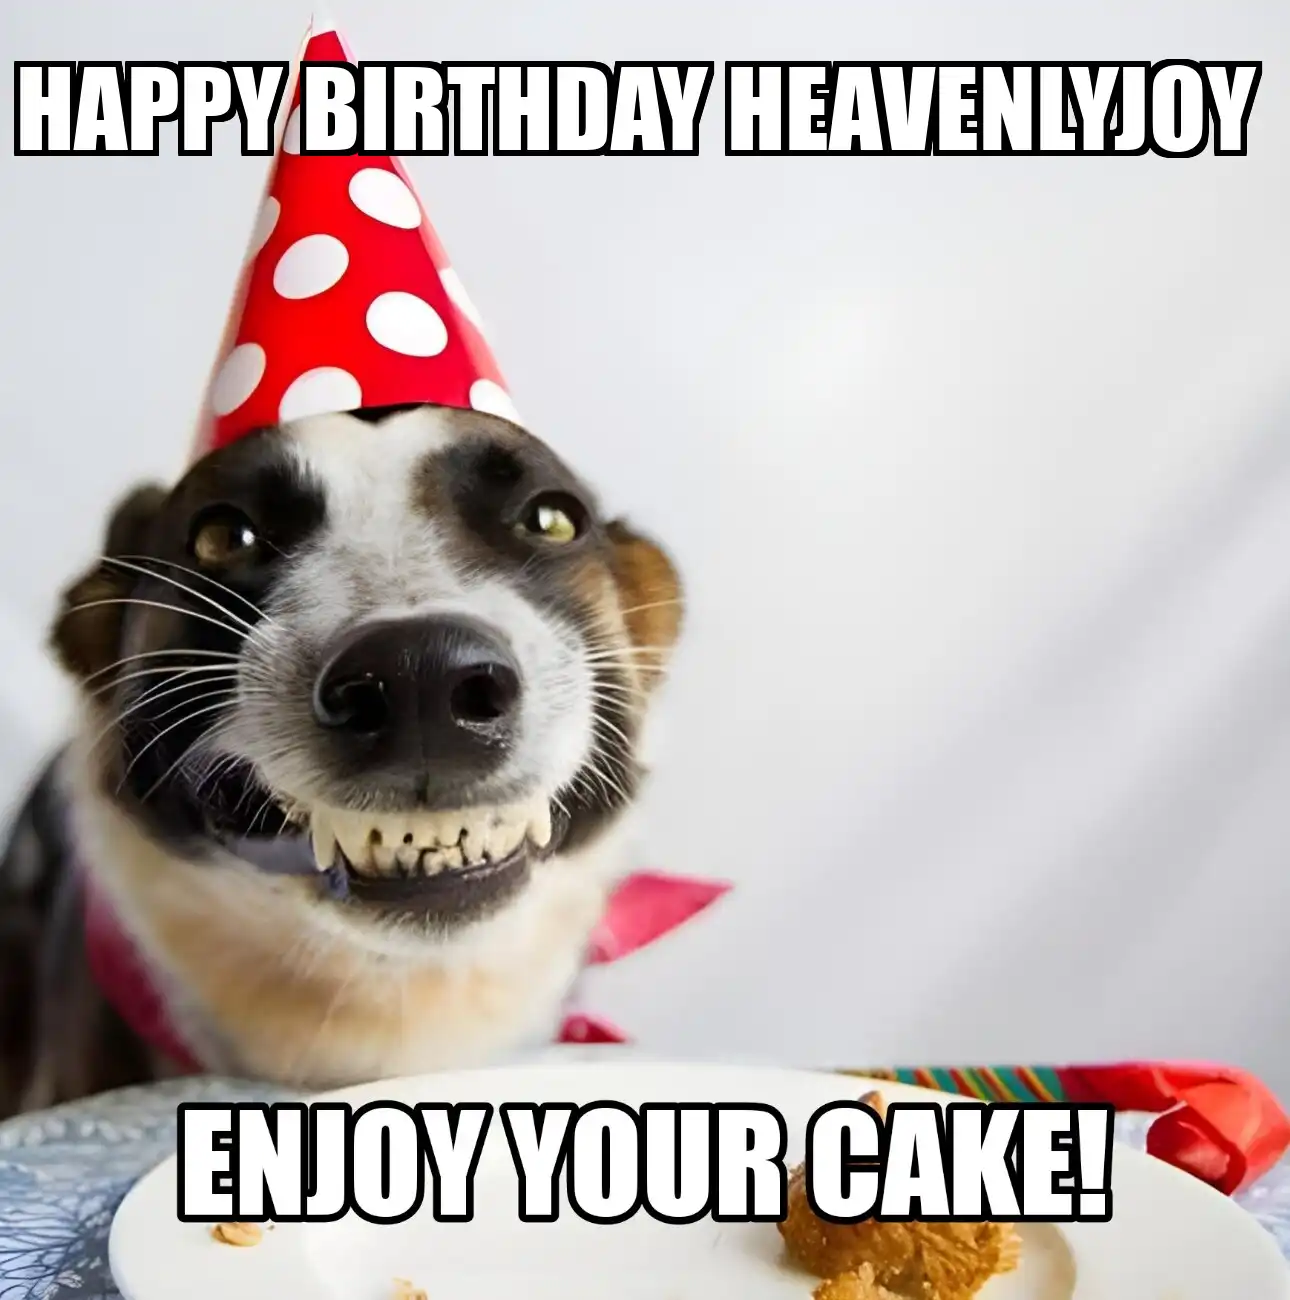 Happy Birthday Heavenlyjoy Enjoy Your Cake Dog Meme